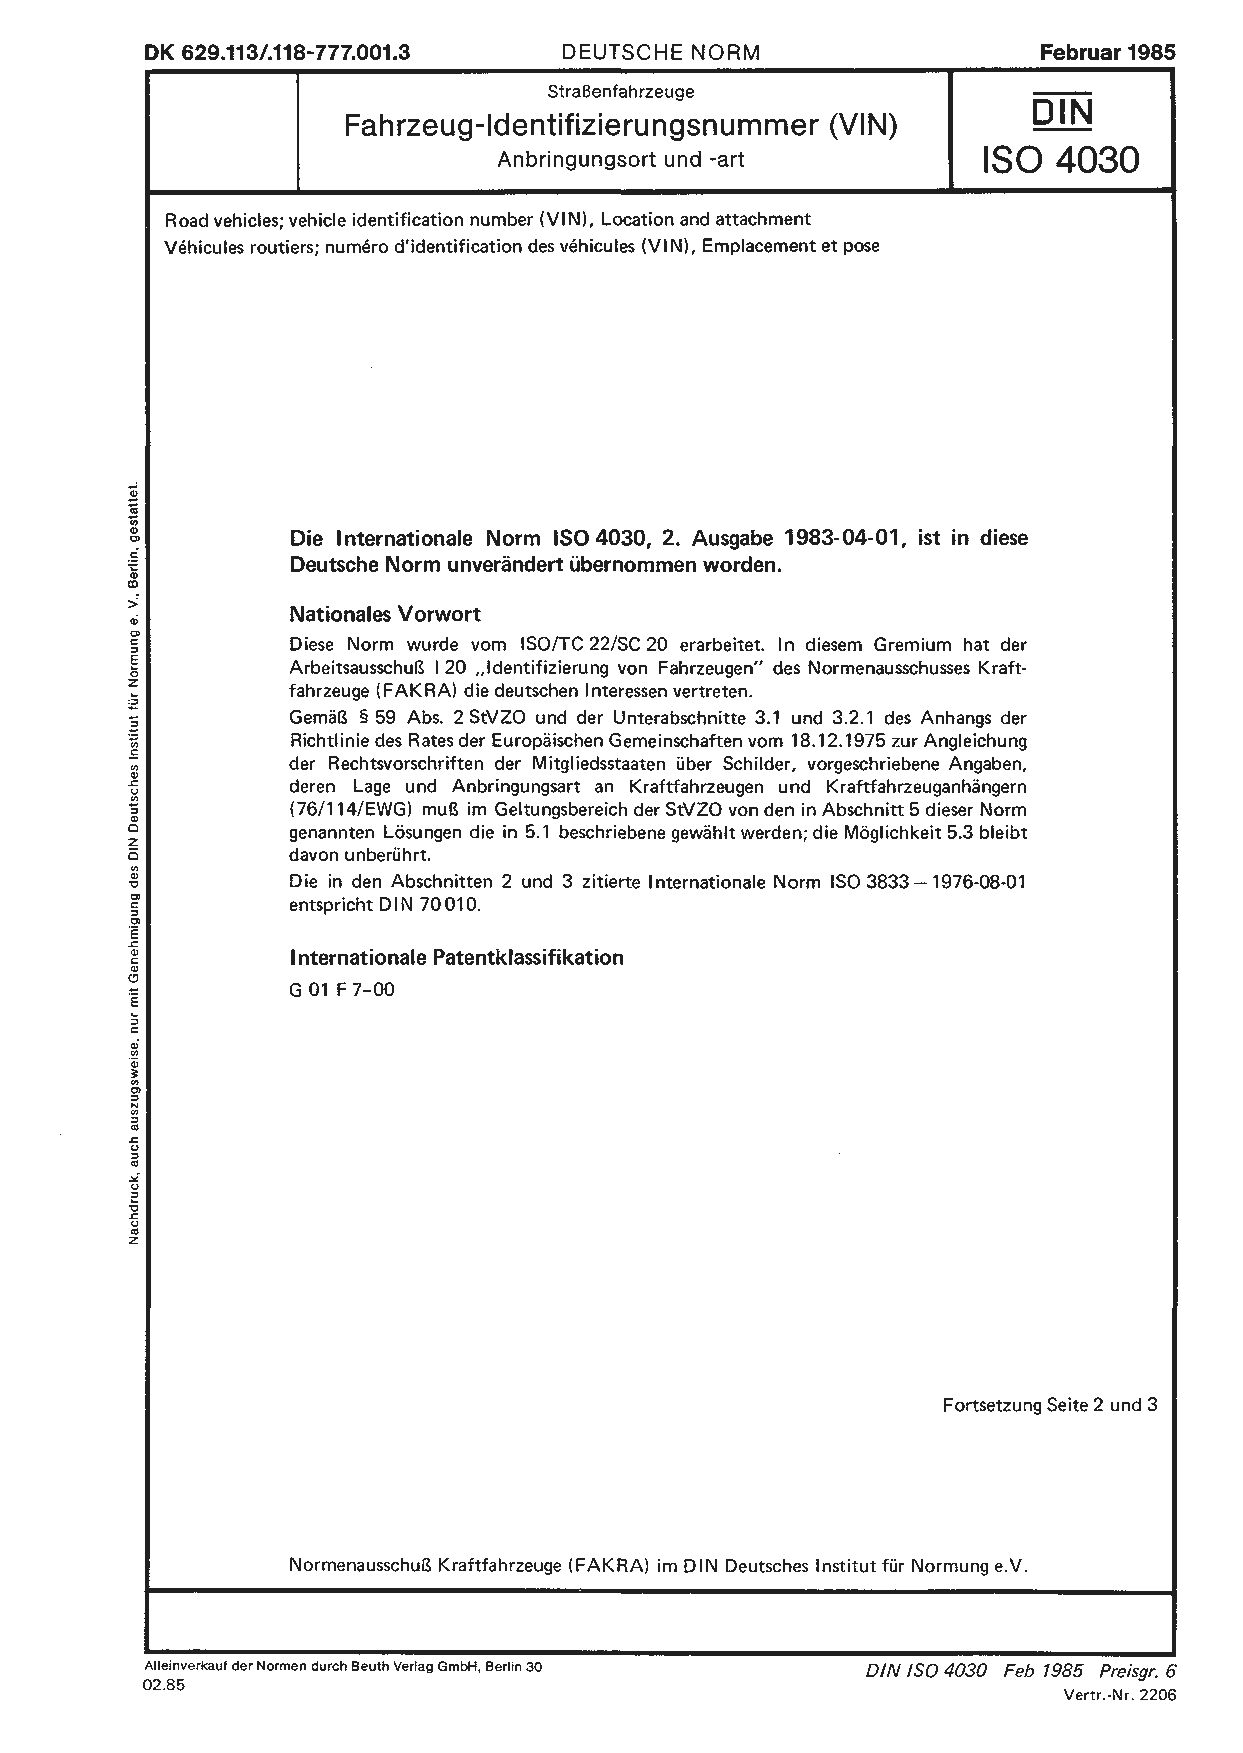 DIN ISO 4030:1985封面图